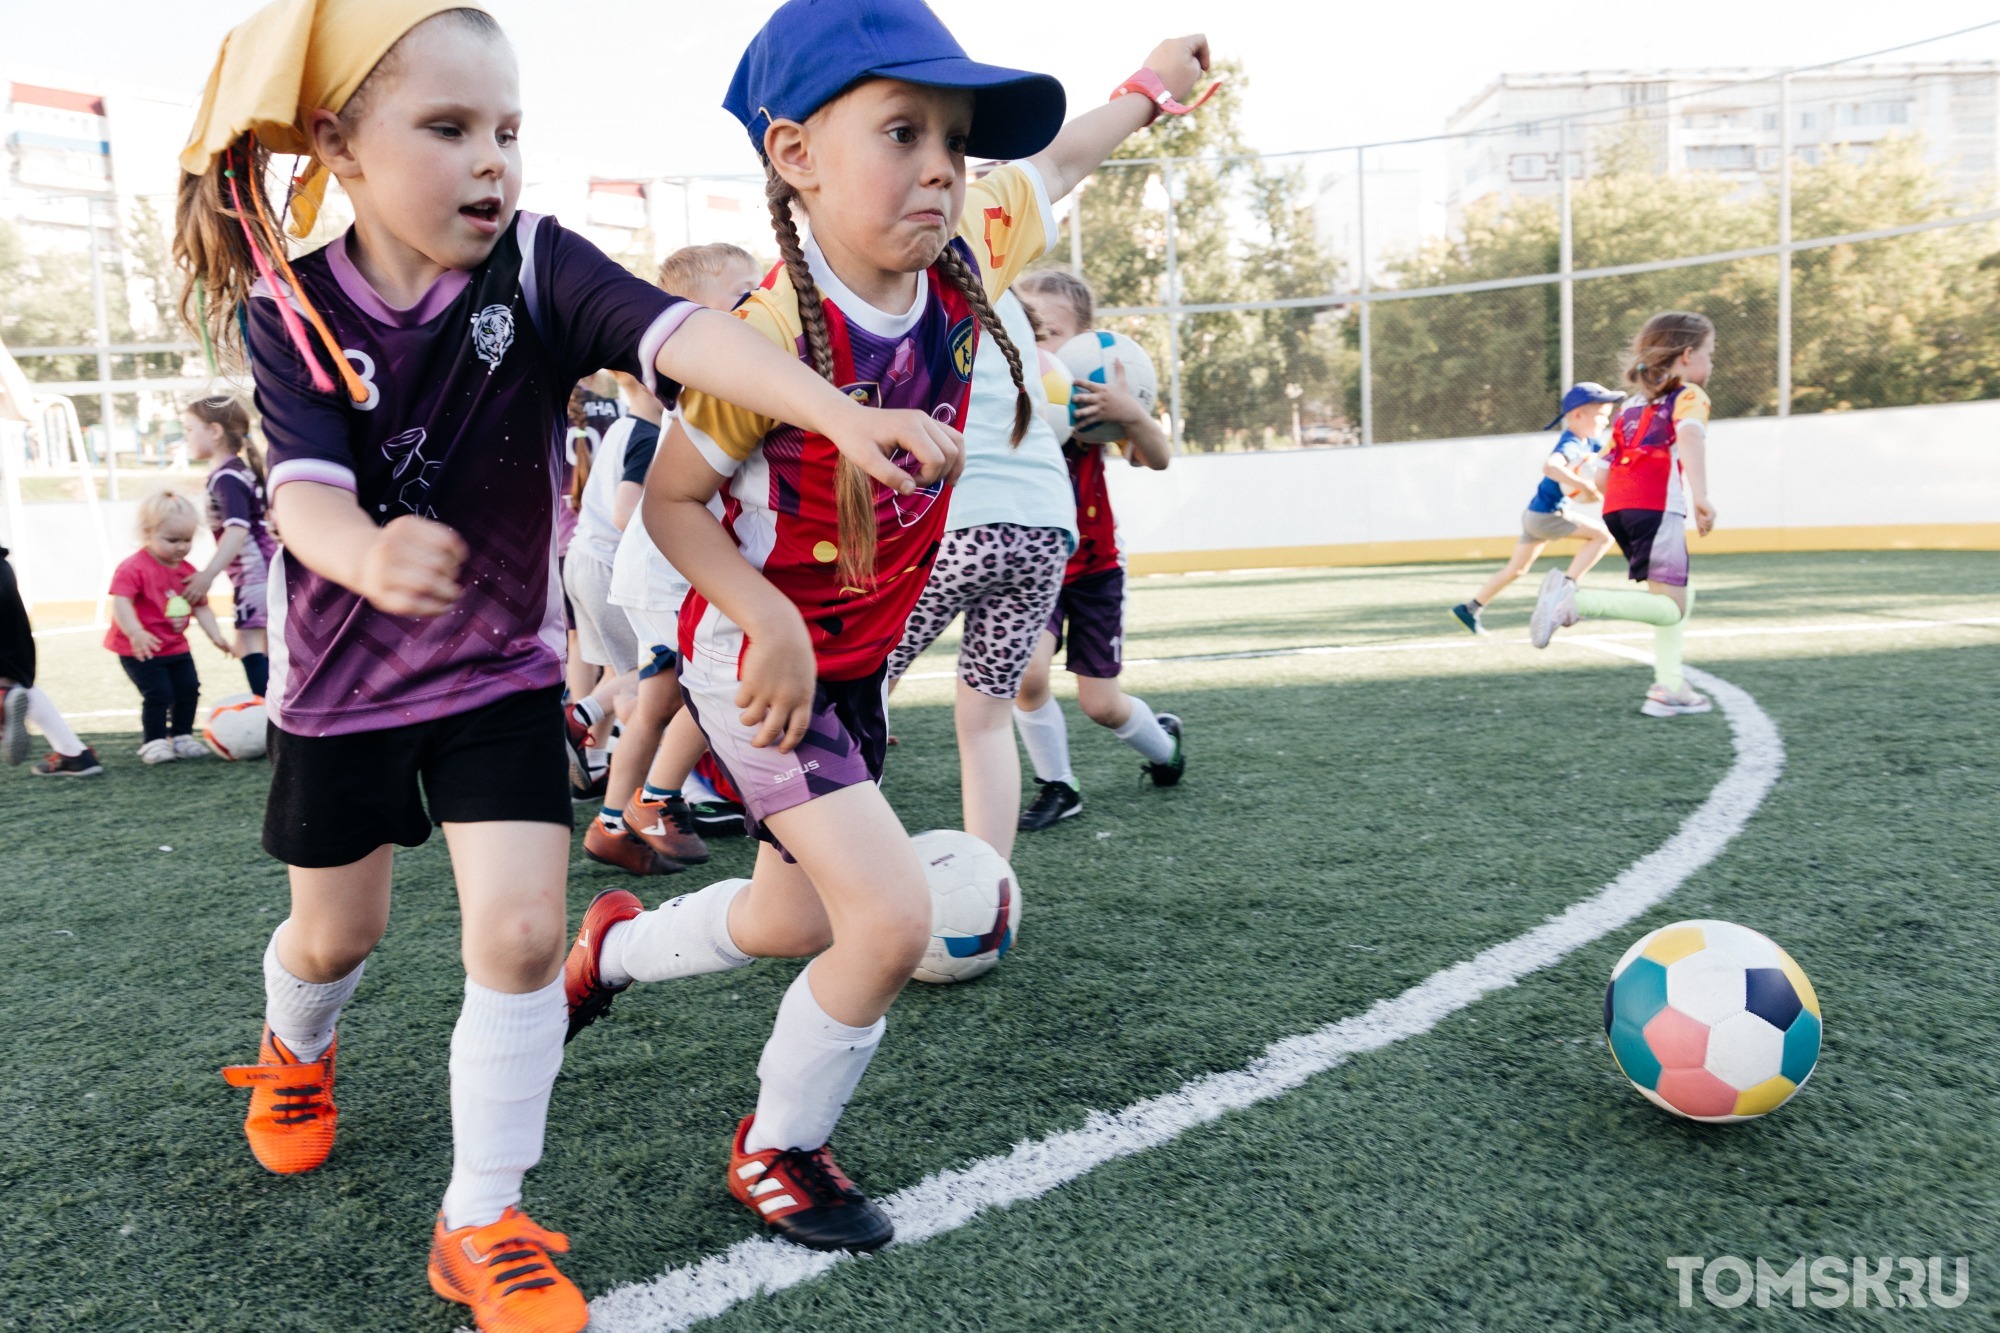 Единственные за Уралом: в Томске появилась школа футбола для девочек